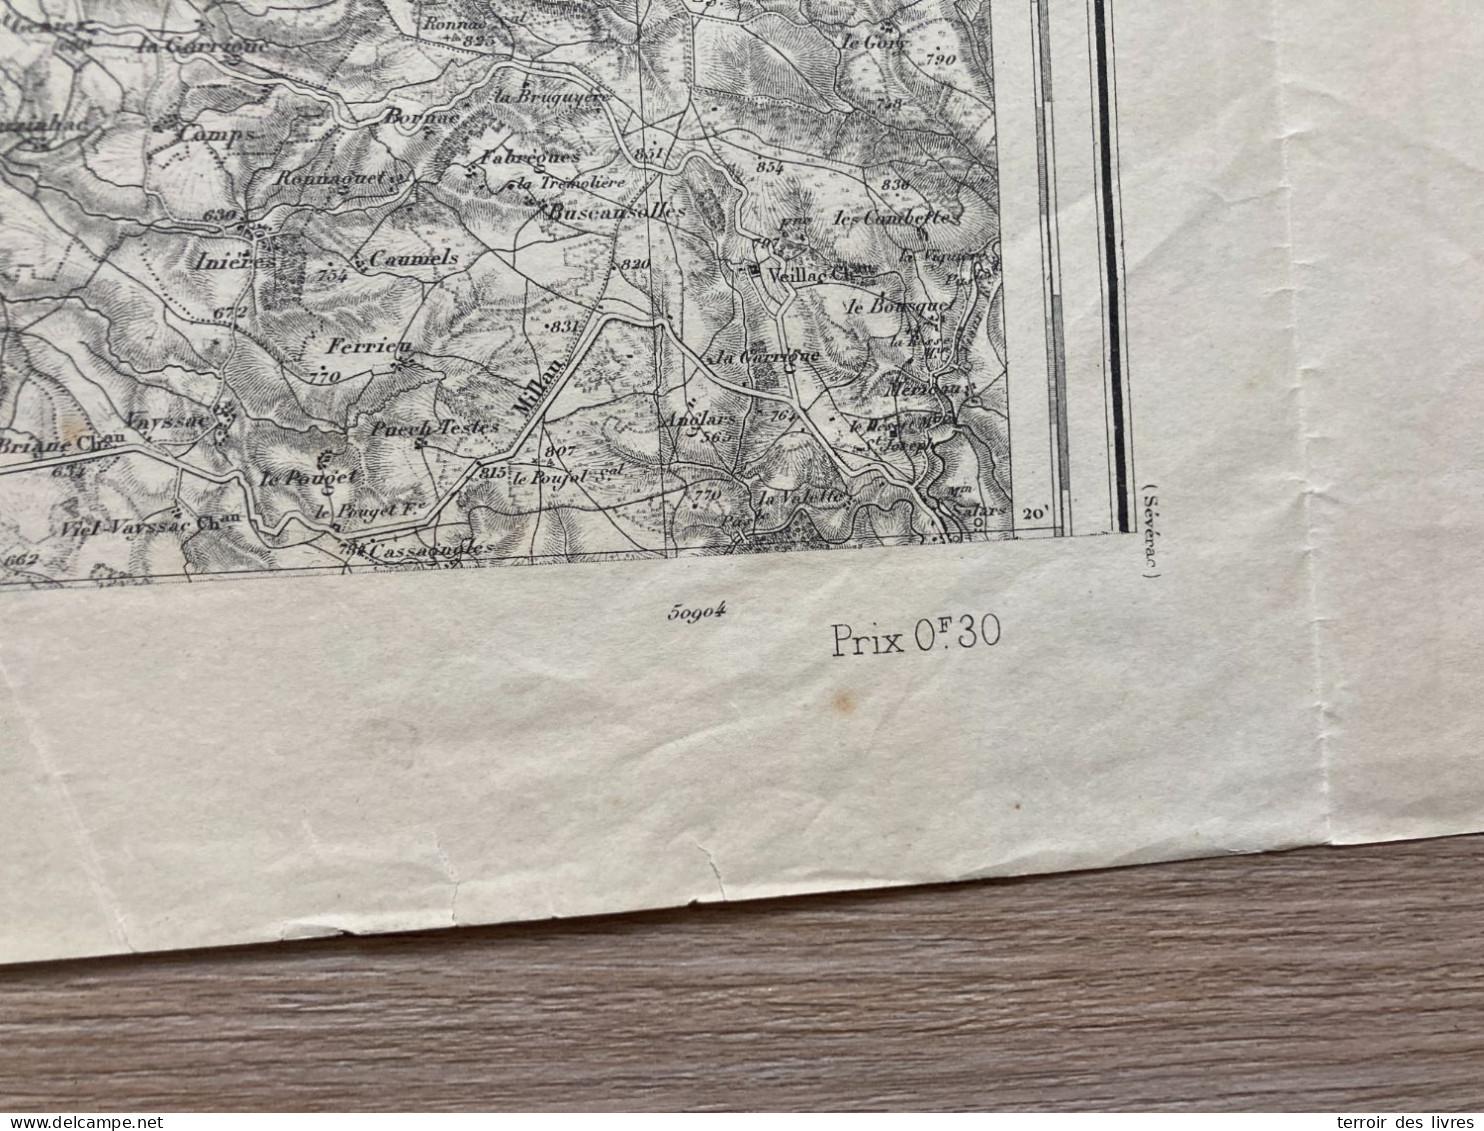 Carte état Major RODEZ 1893 35x54cm ONET LE CHATEAU DRUELLE SEBAZAC-CONCOURES RODEZ QUATRE-SAISONS SALLES-LA-SOURCE OLEM - Geographical Maps